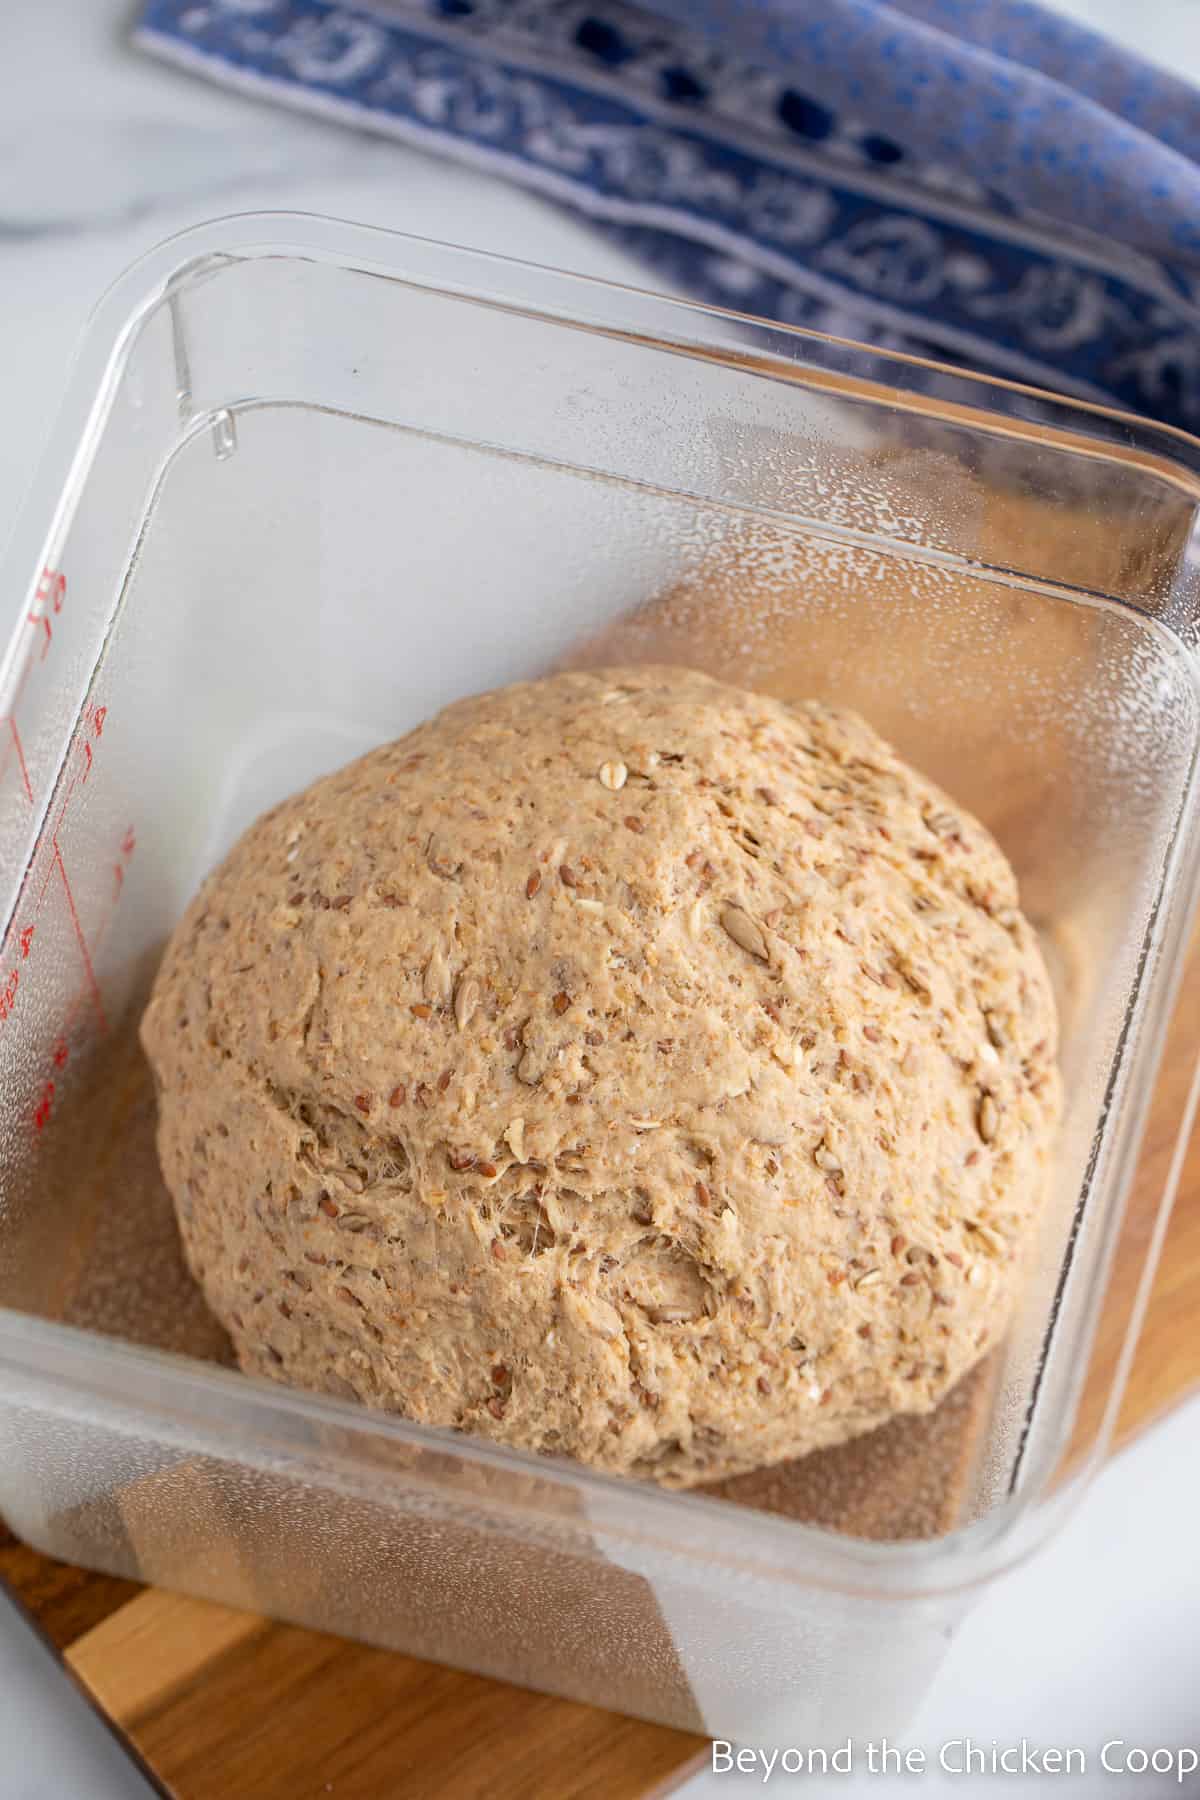 Bread dough in a plastic container.